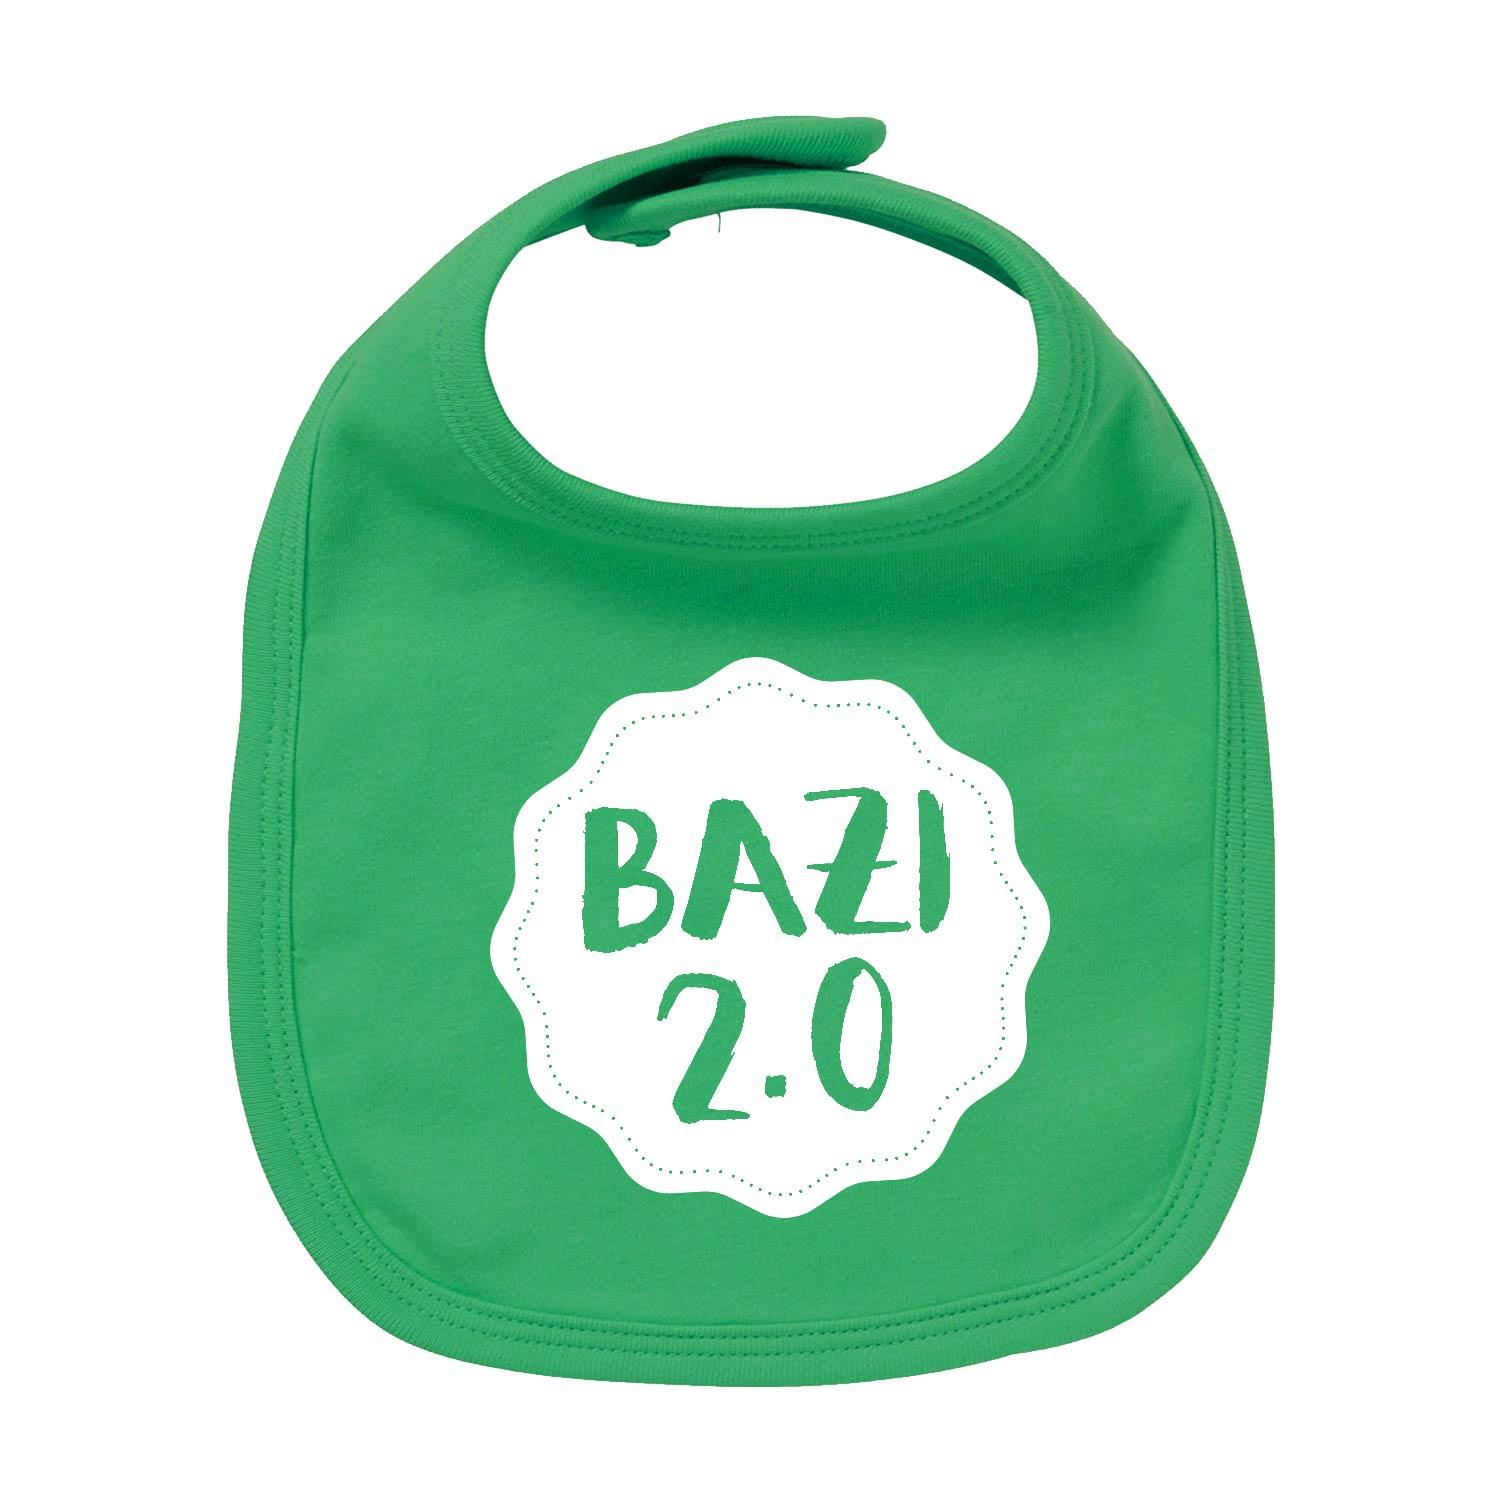 Lätzchen "Bazi 2.0" - bavariashop - mei LebensGfui